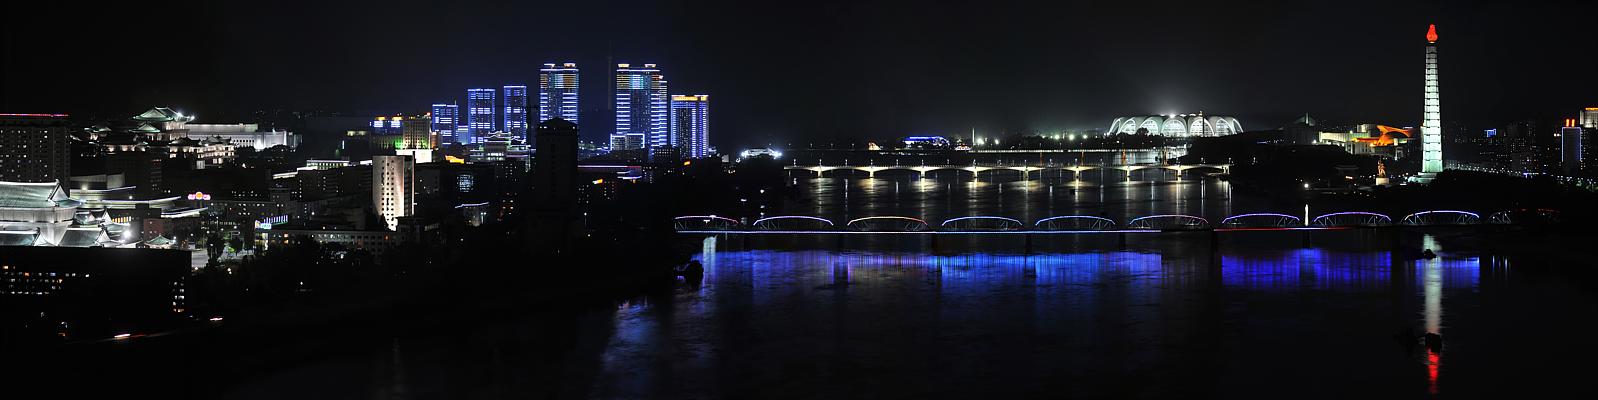 Pjöngjang - Panorama